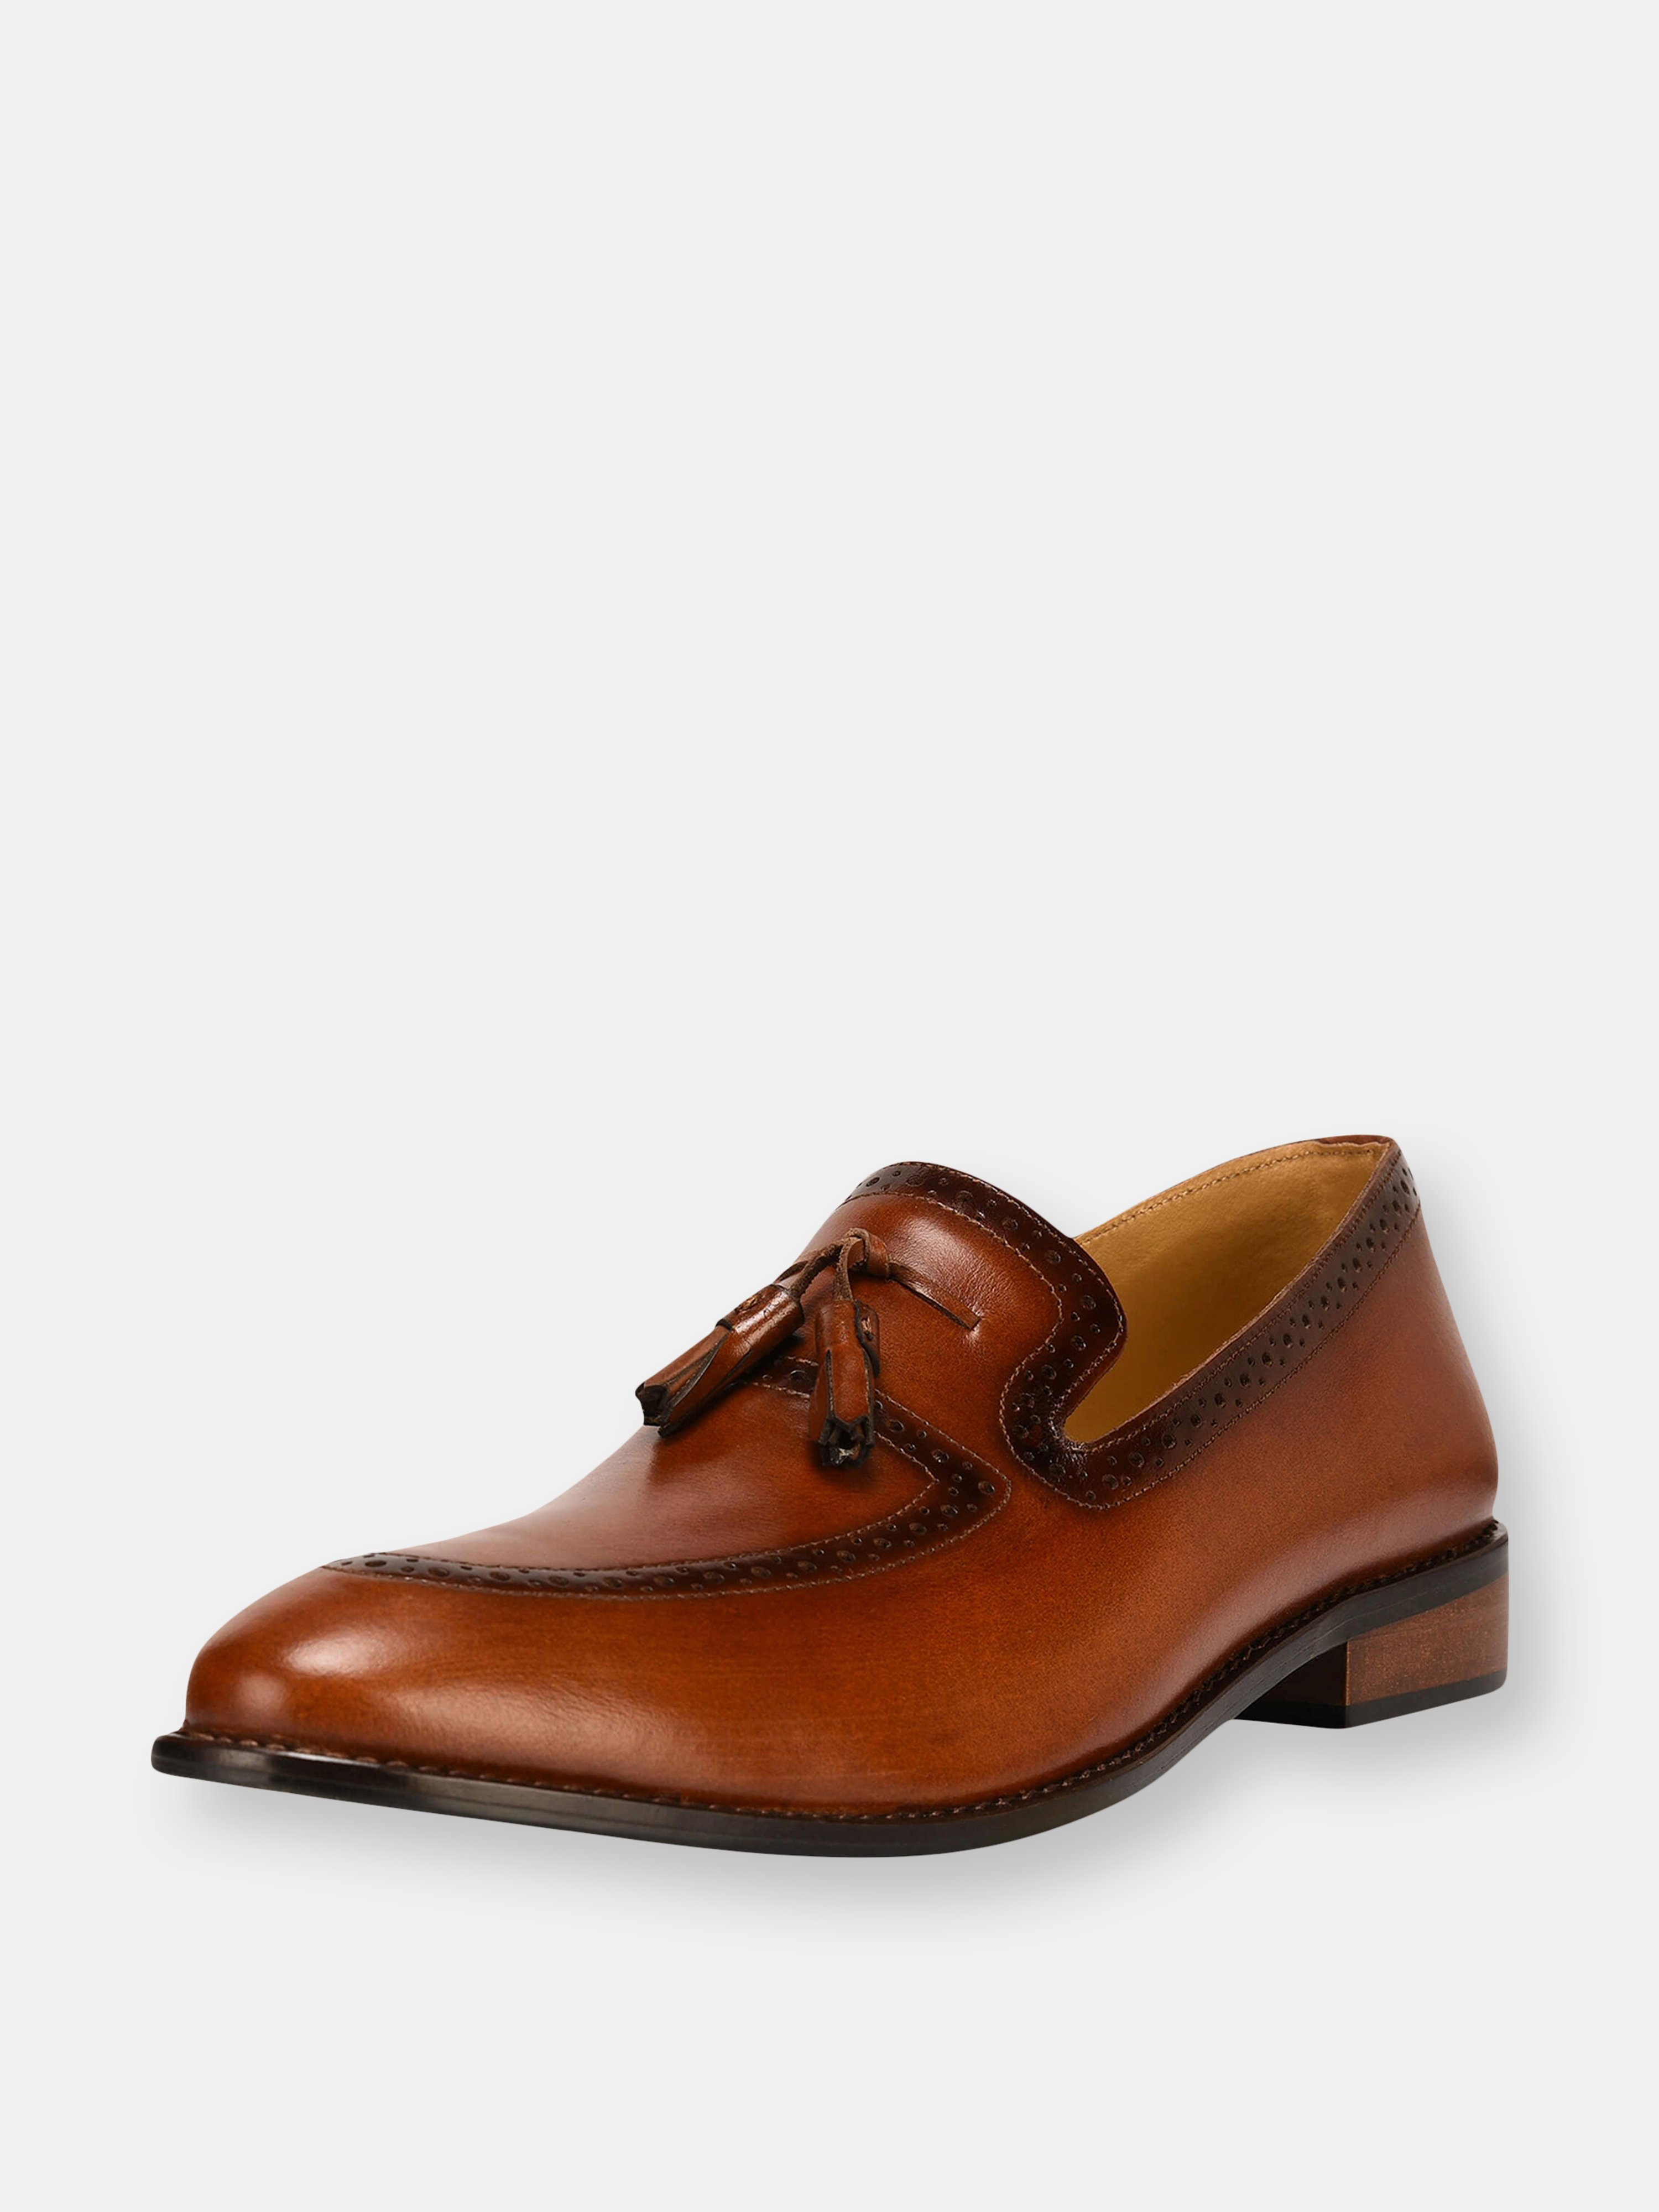 Libertyzeno Tassel Loafer Leather Tassels Shoes In Brown